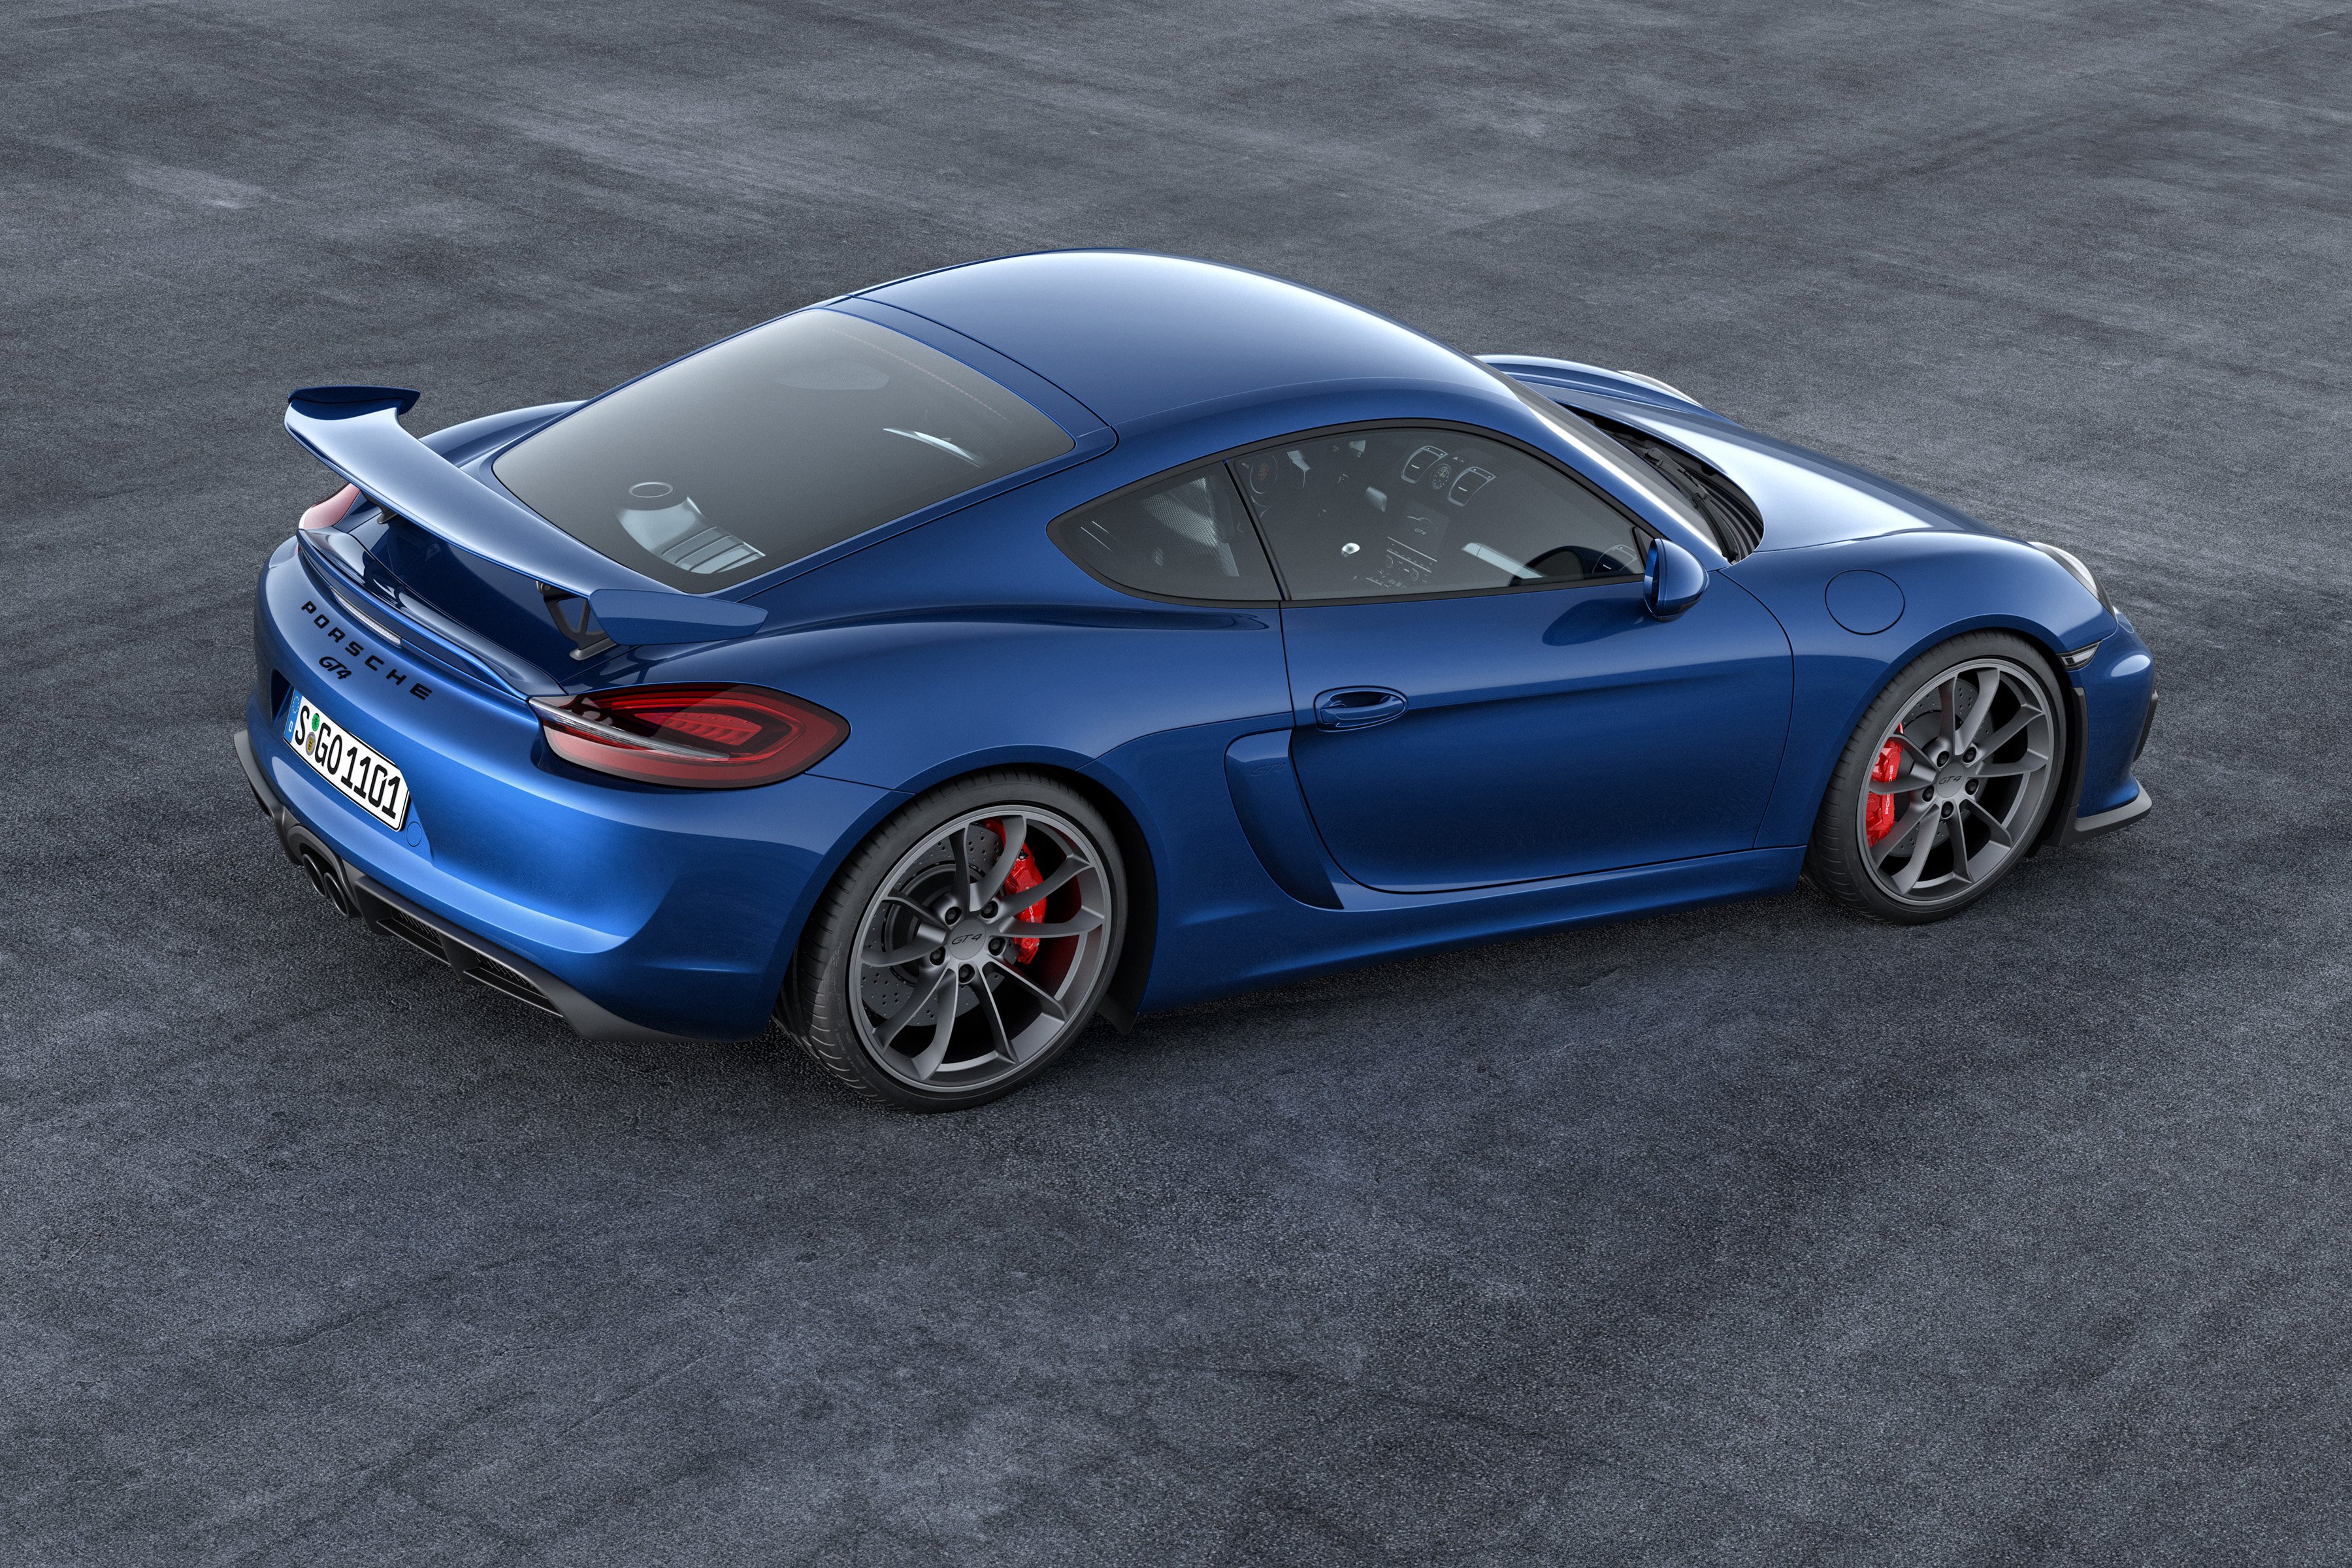 2015, Porsche, Cayman, Gt4, 981c, Supercar Wallpaper